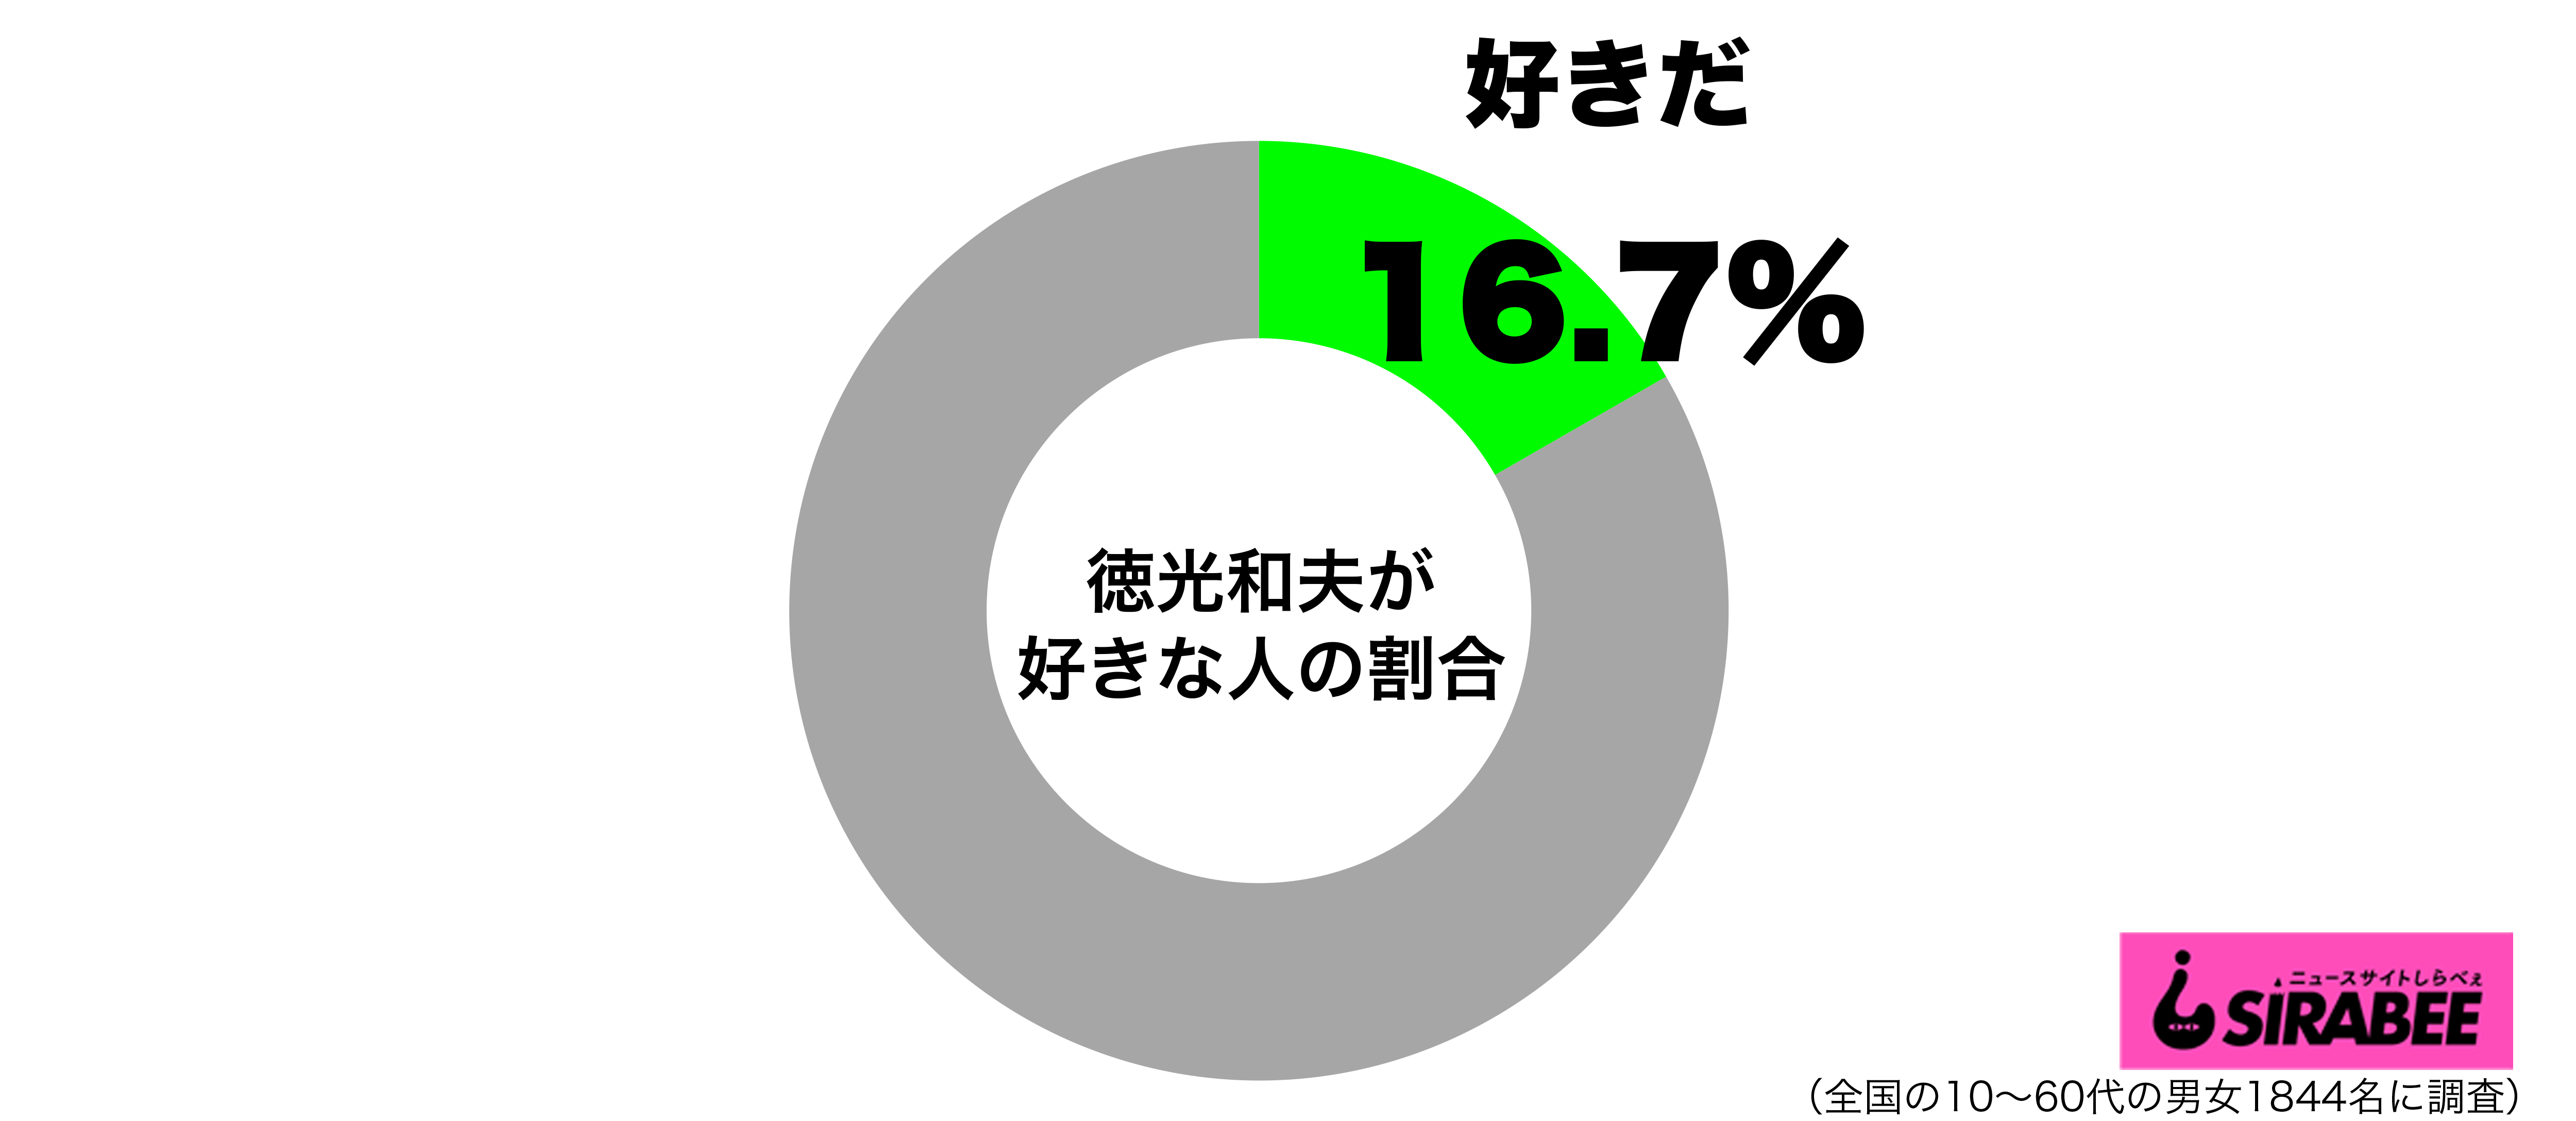 50代男性の3割が 徳光和夫が好き 阪神ファンからは批判的な声も ニュースサイトしらべぇ